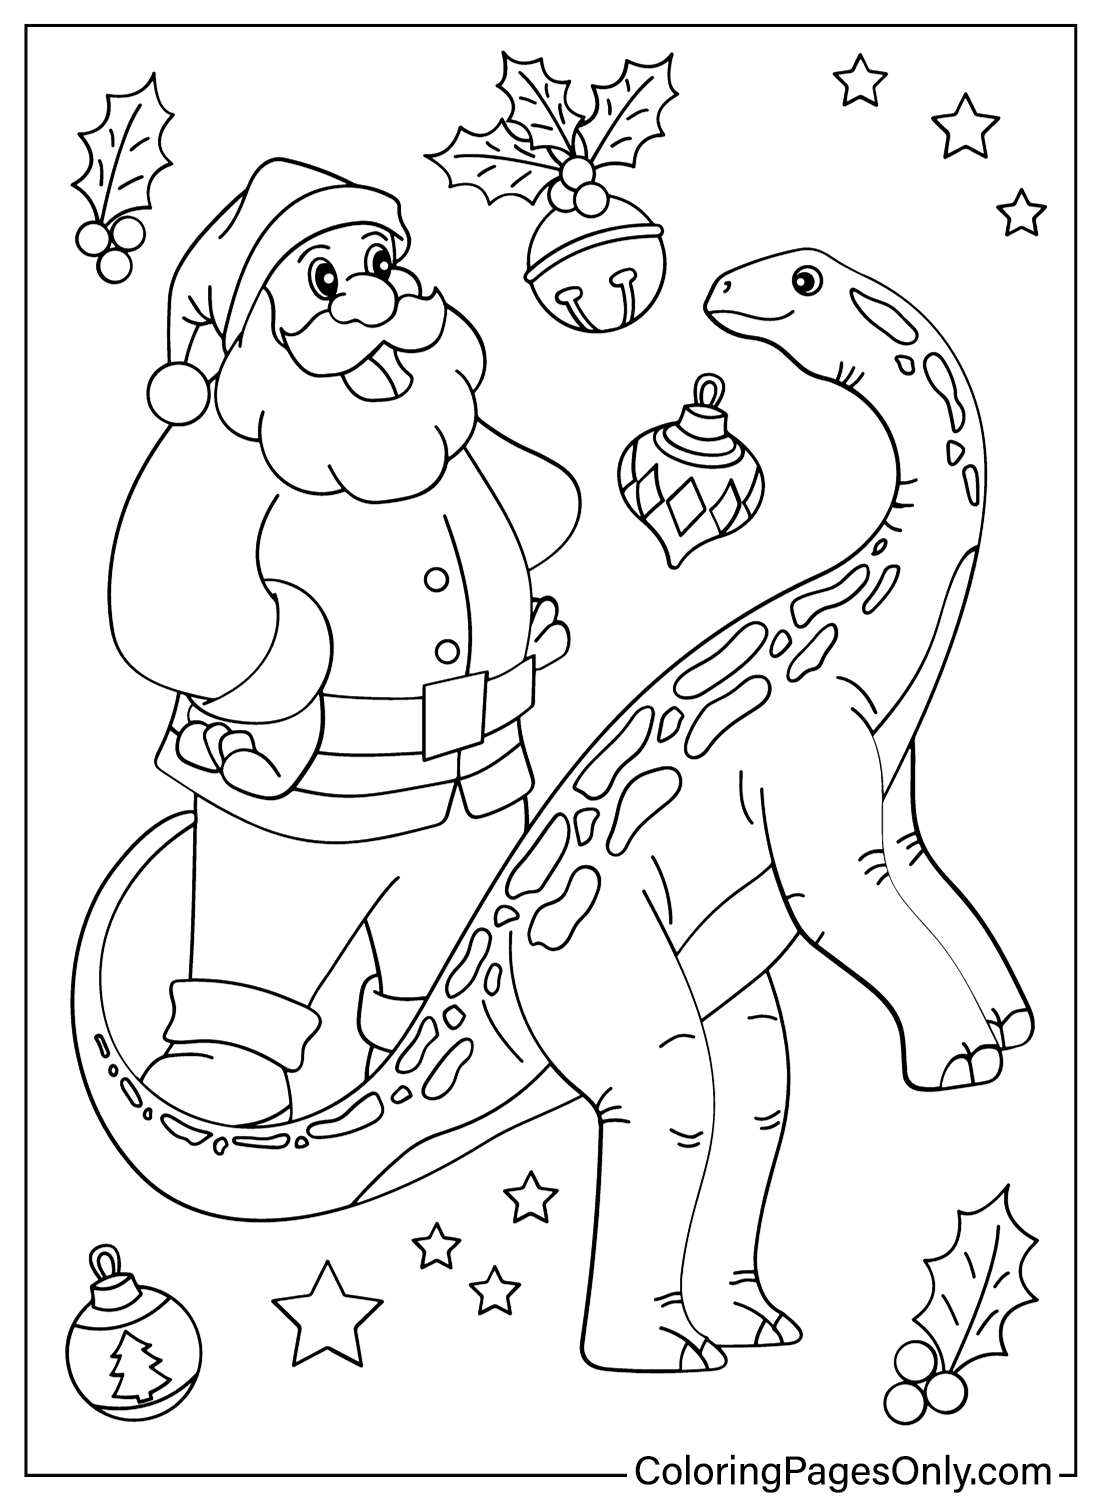 Christmas Dinosaur and Santa Coloring Page